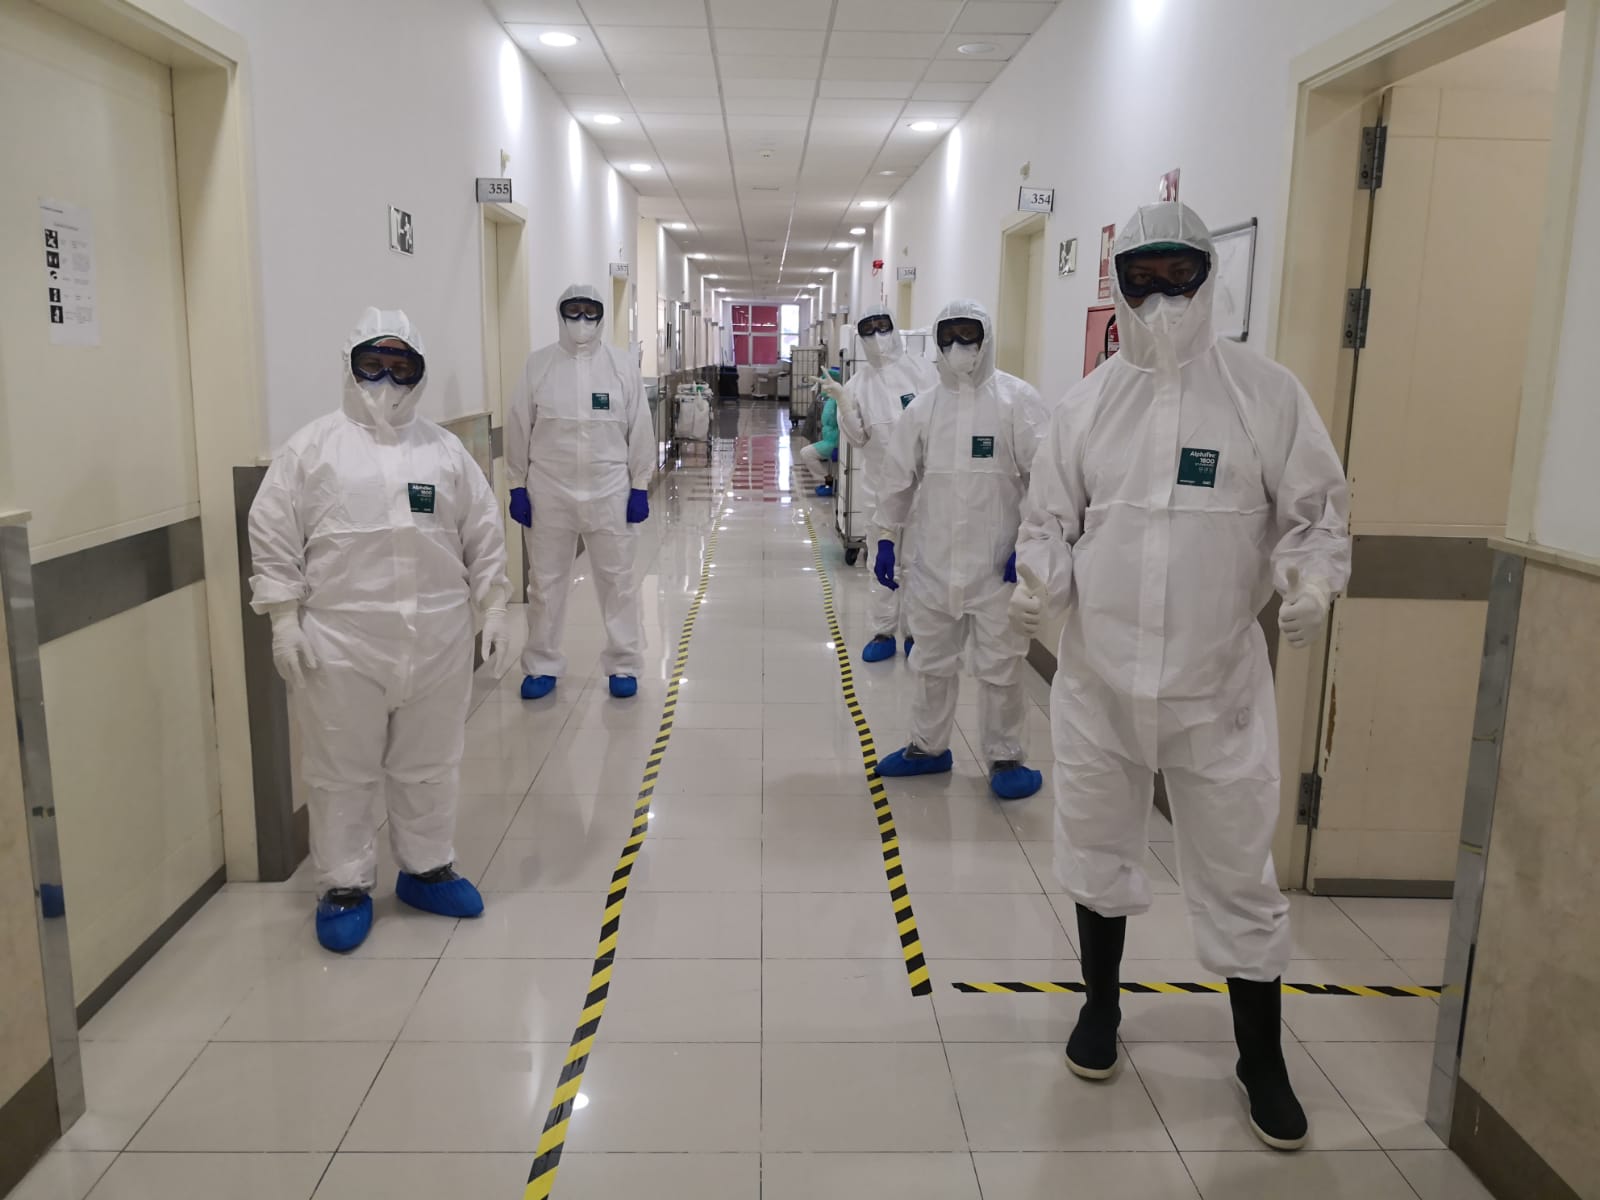 El Hospital de Dios la importancia del soporte al profesional sanitario durante pandemia covid19 | San Juan de Dios Tenerife